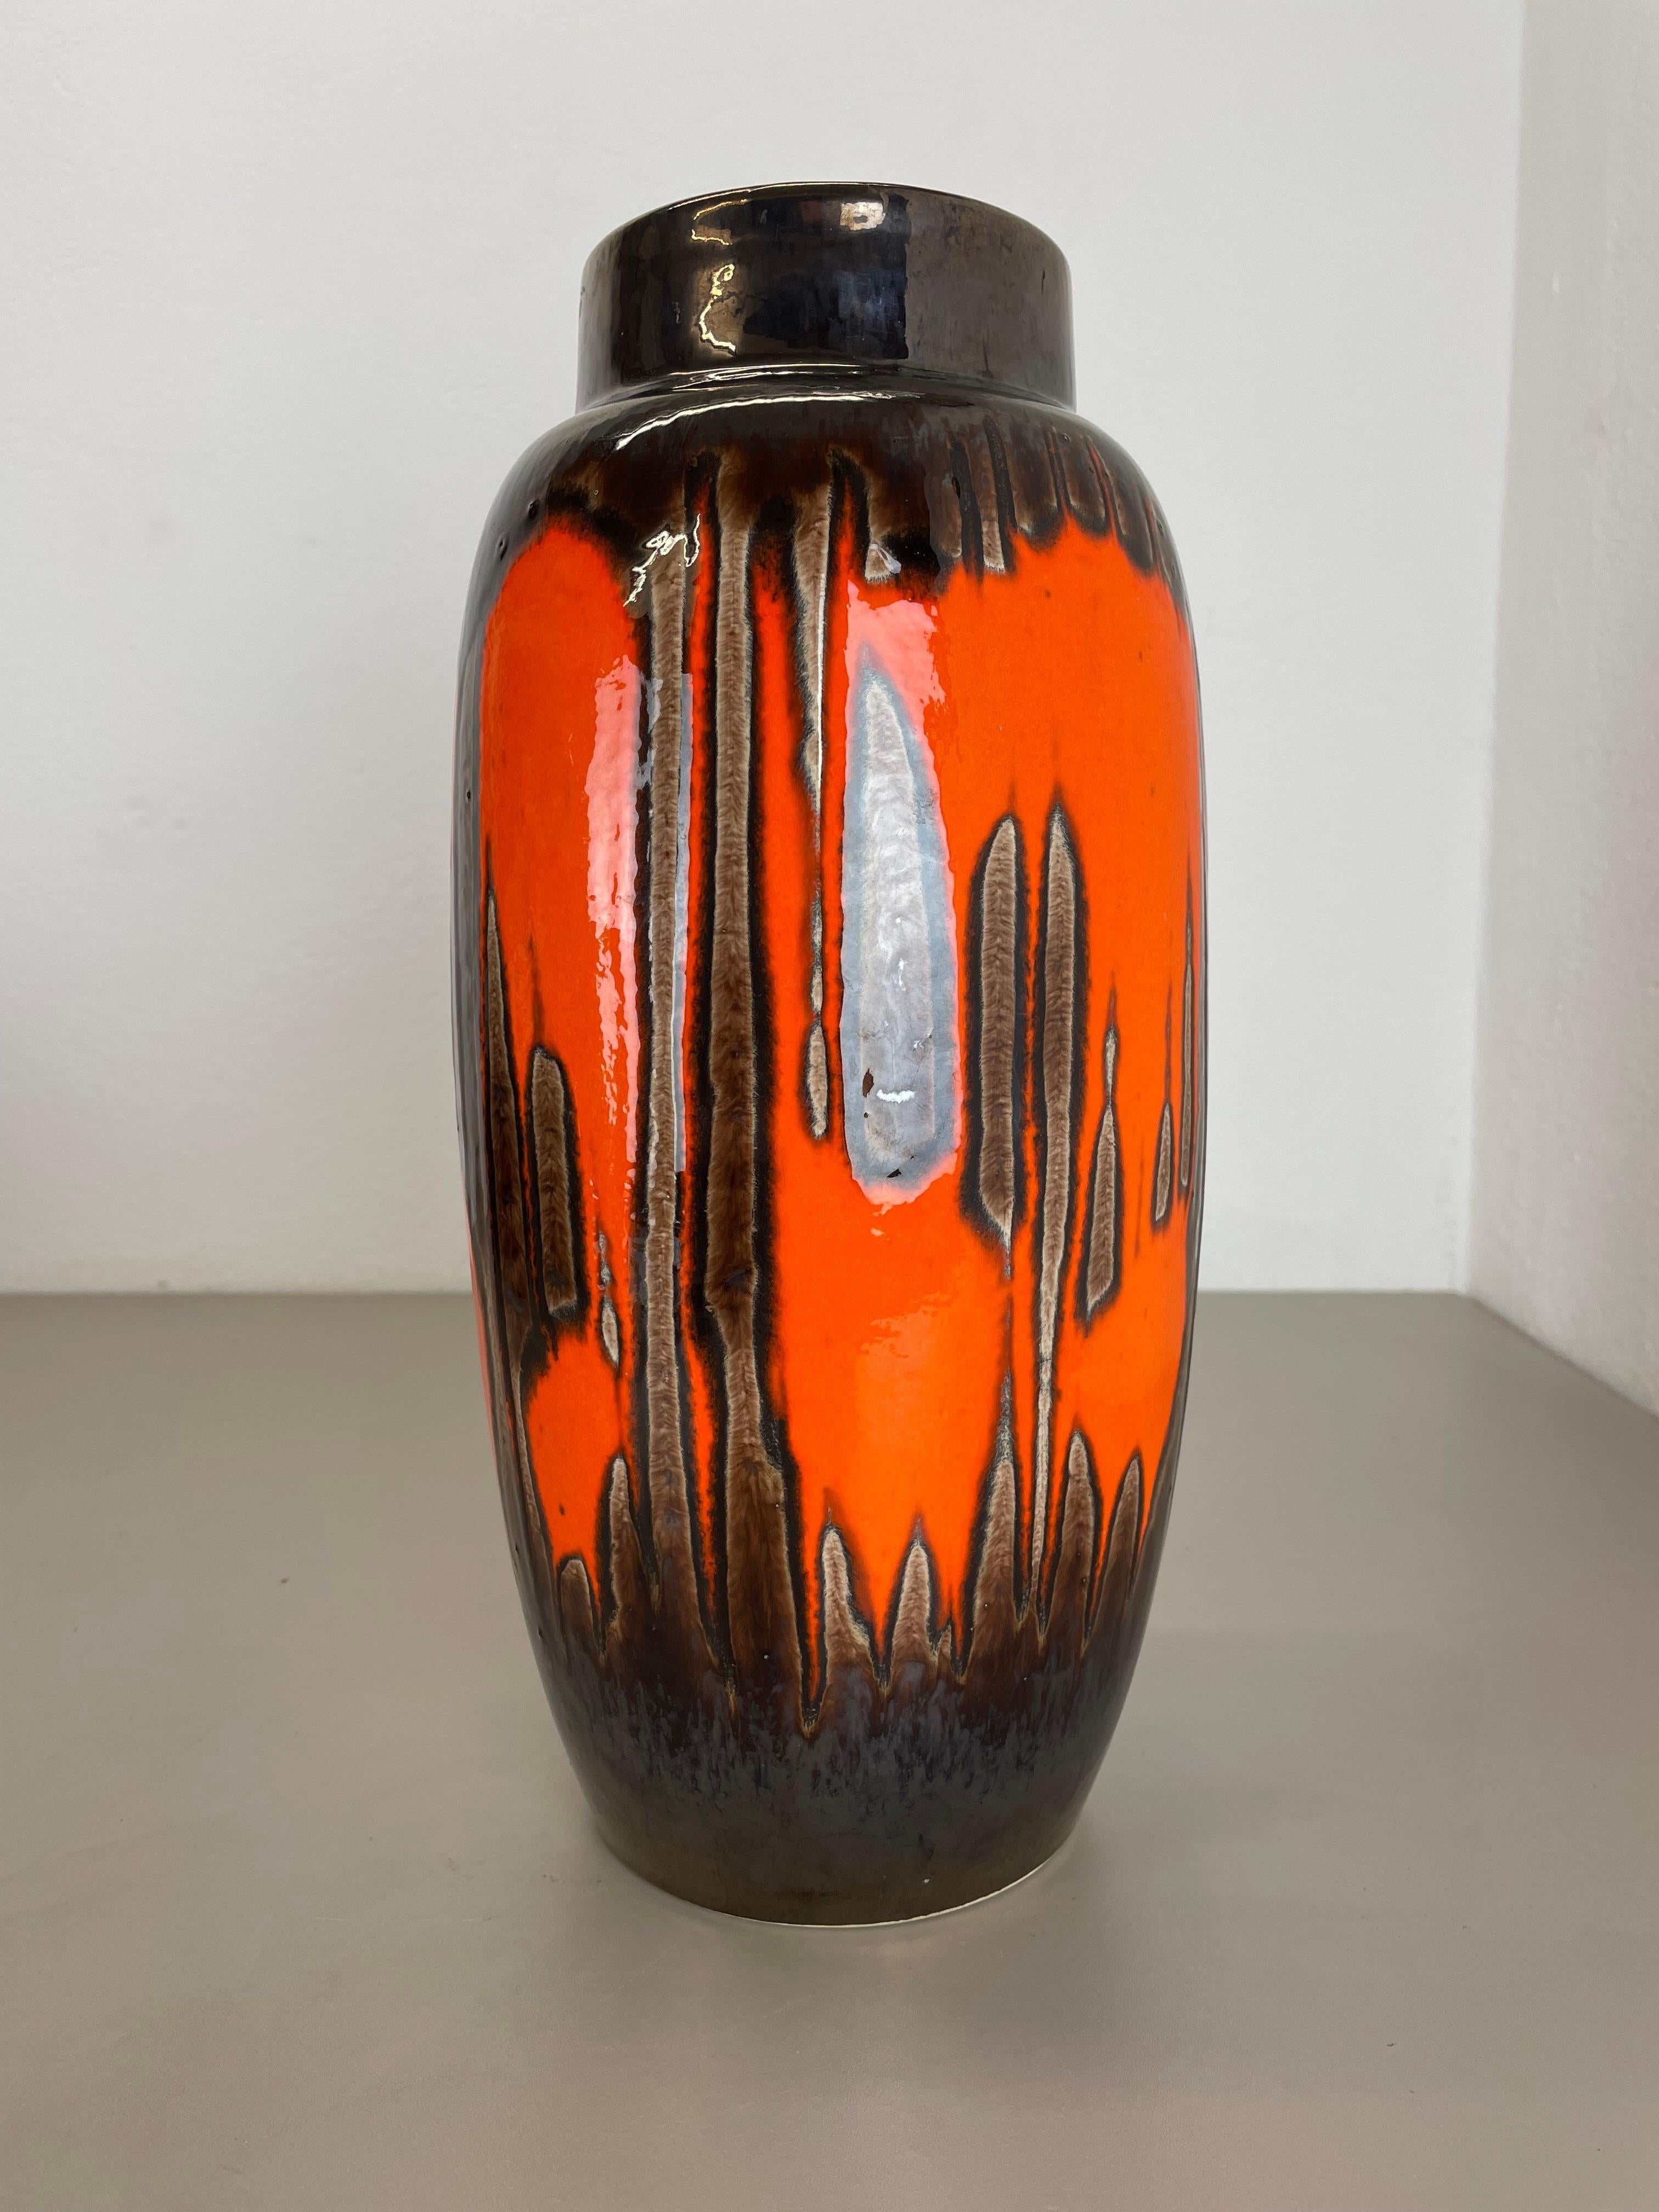 Artikel:

Fett Lava Kunst Vase super selten ZIG ZAG DECOR.



Produzent:

Scheurich, Deutschland



Jahrzehnt:

1970s




Diese originelle Vintage-Vase wurde in den 1970er Jahren in Deutschland von Scheurich hergestellt. Sie ist aus Keramik in